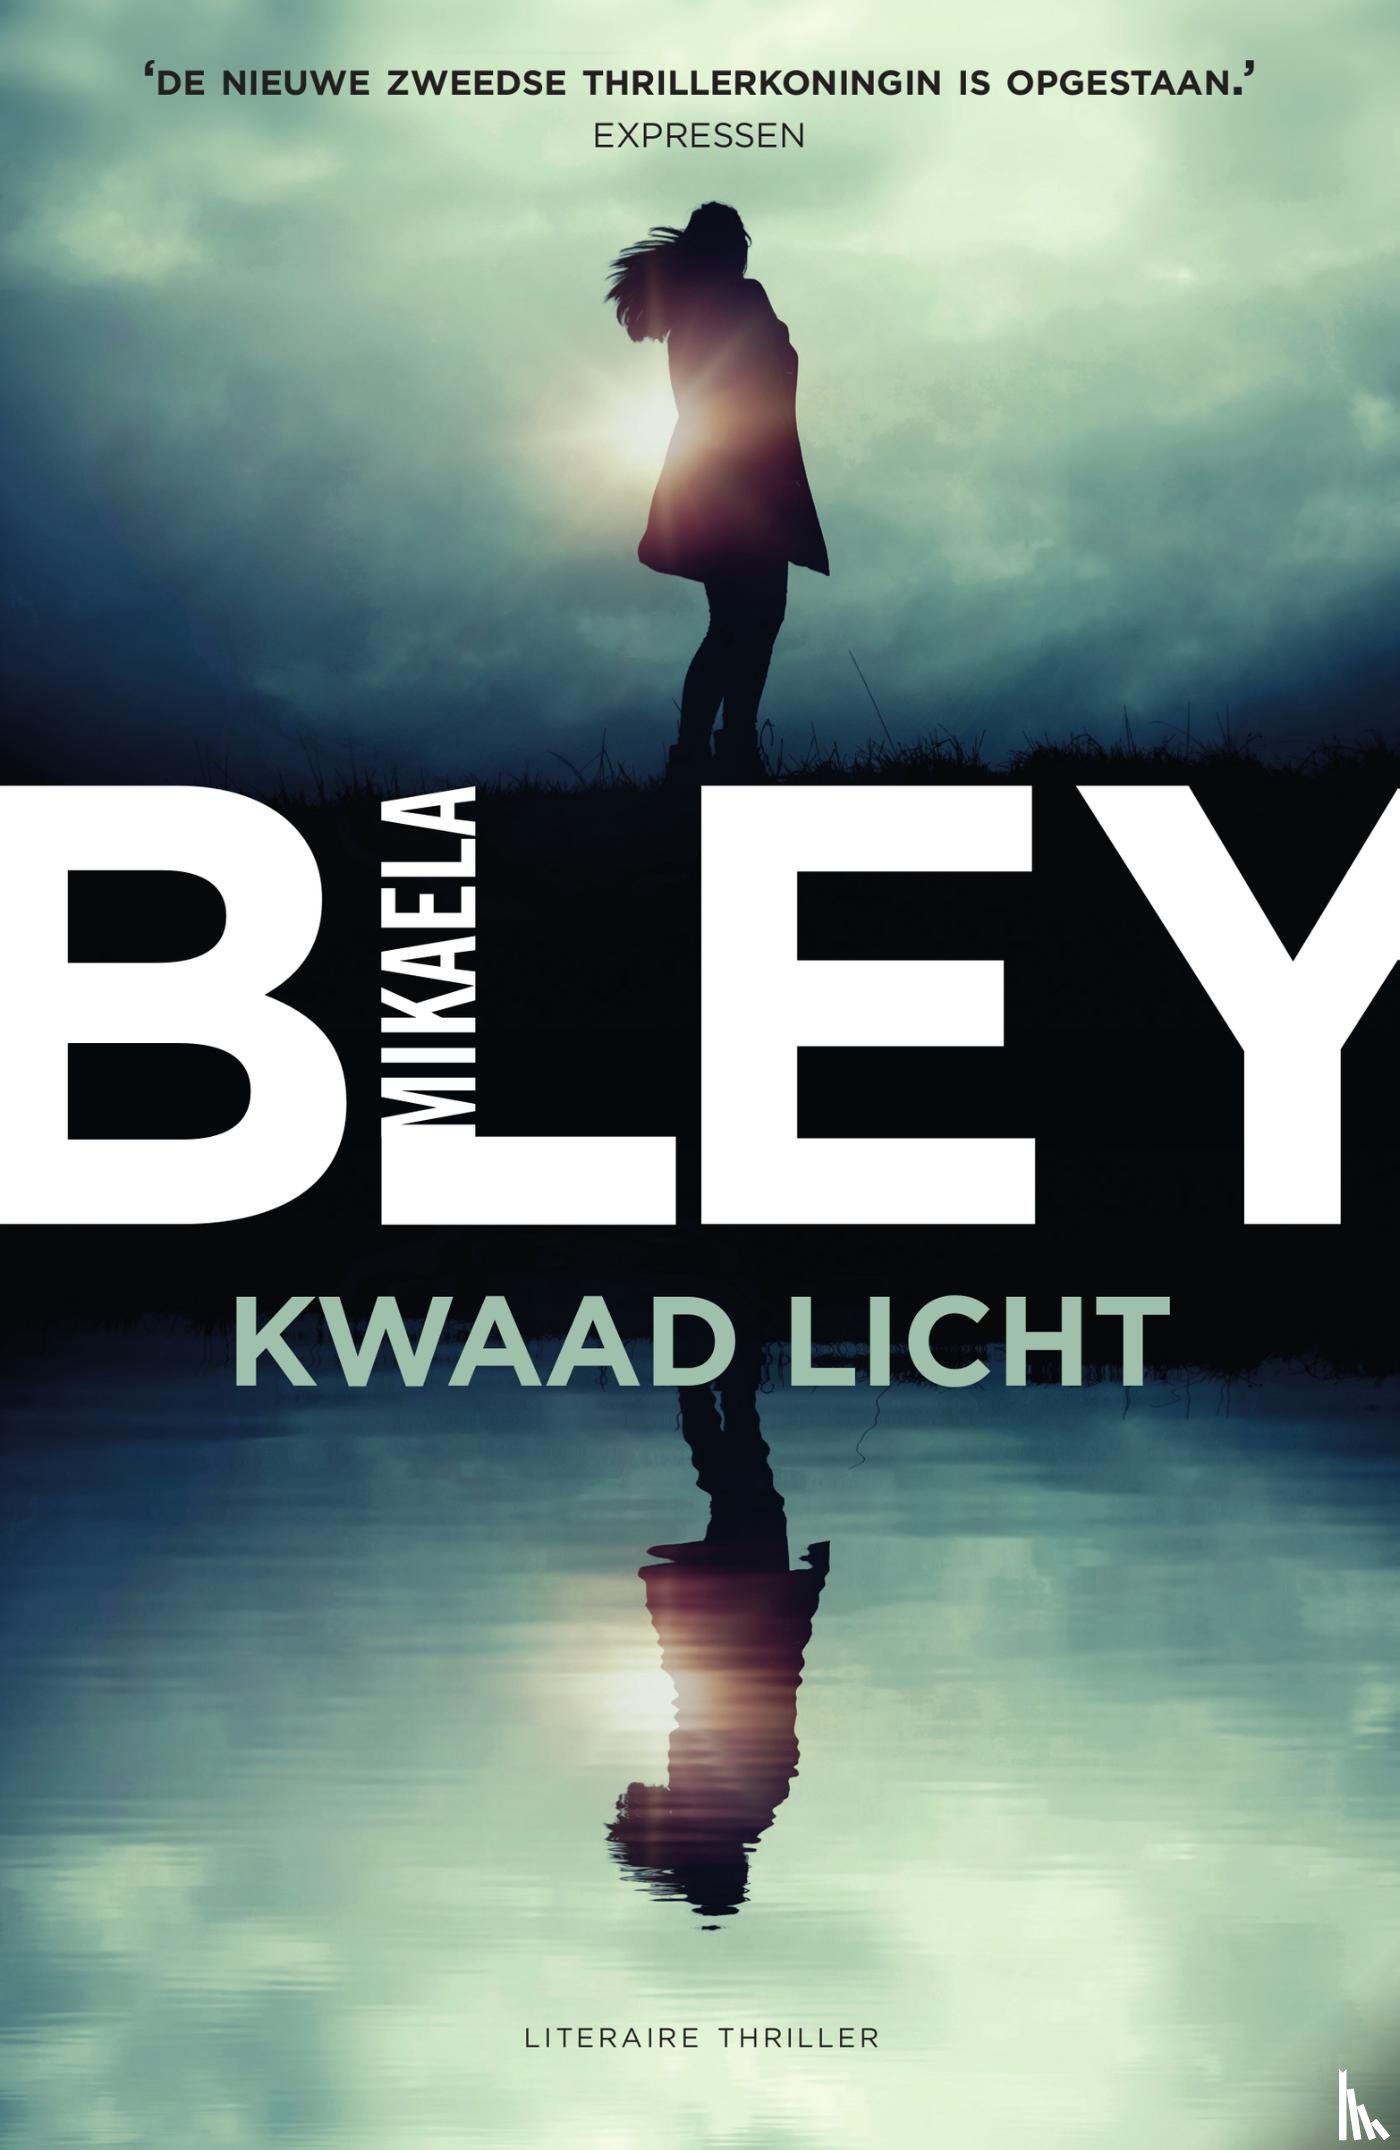 Bley, Mikaela - Kwaad licht